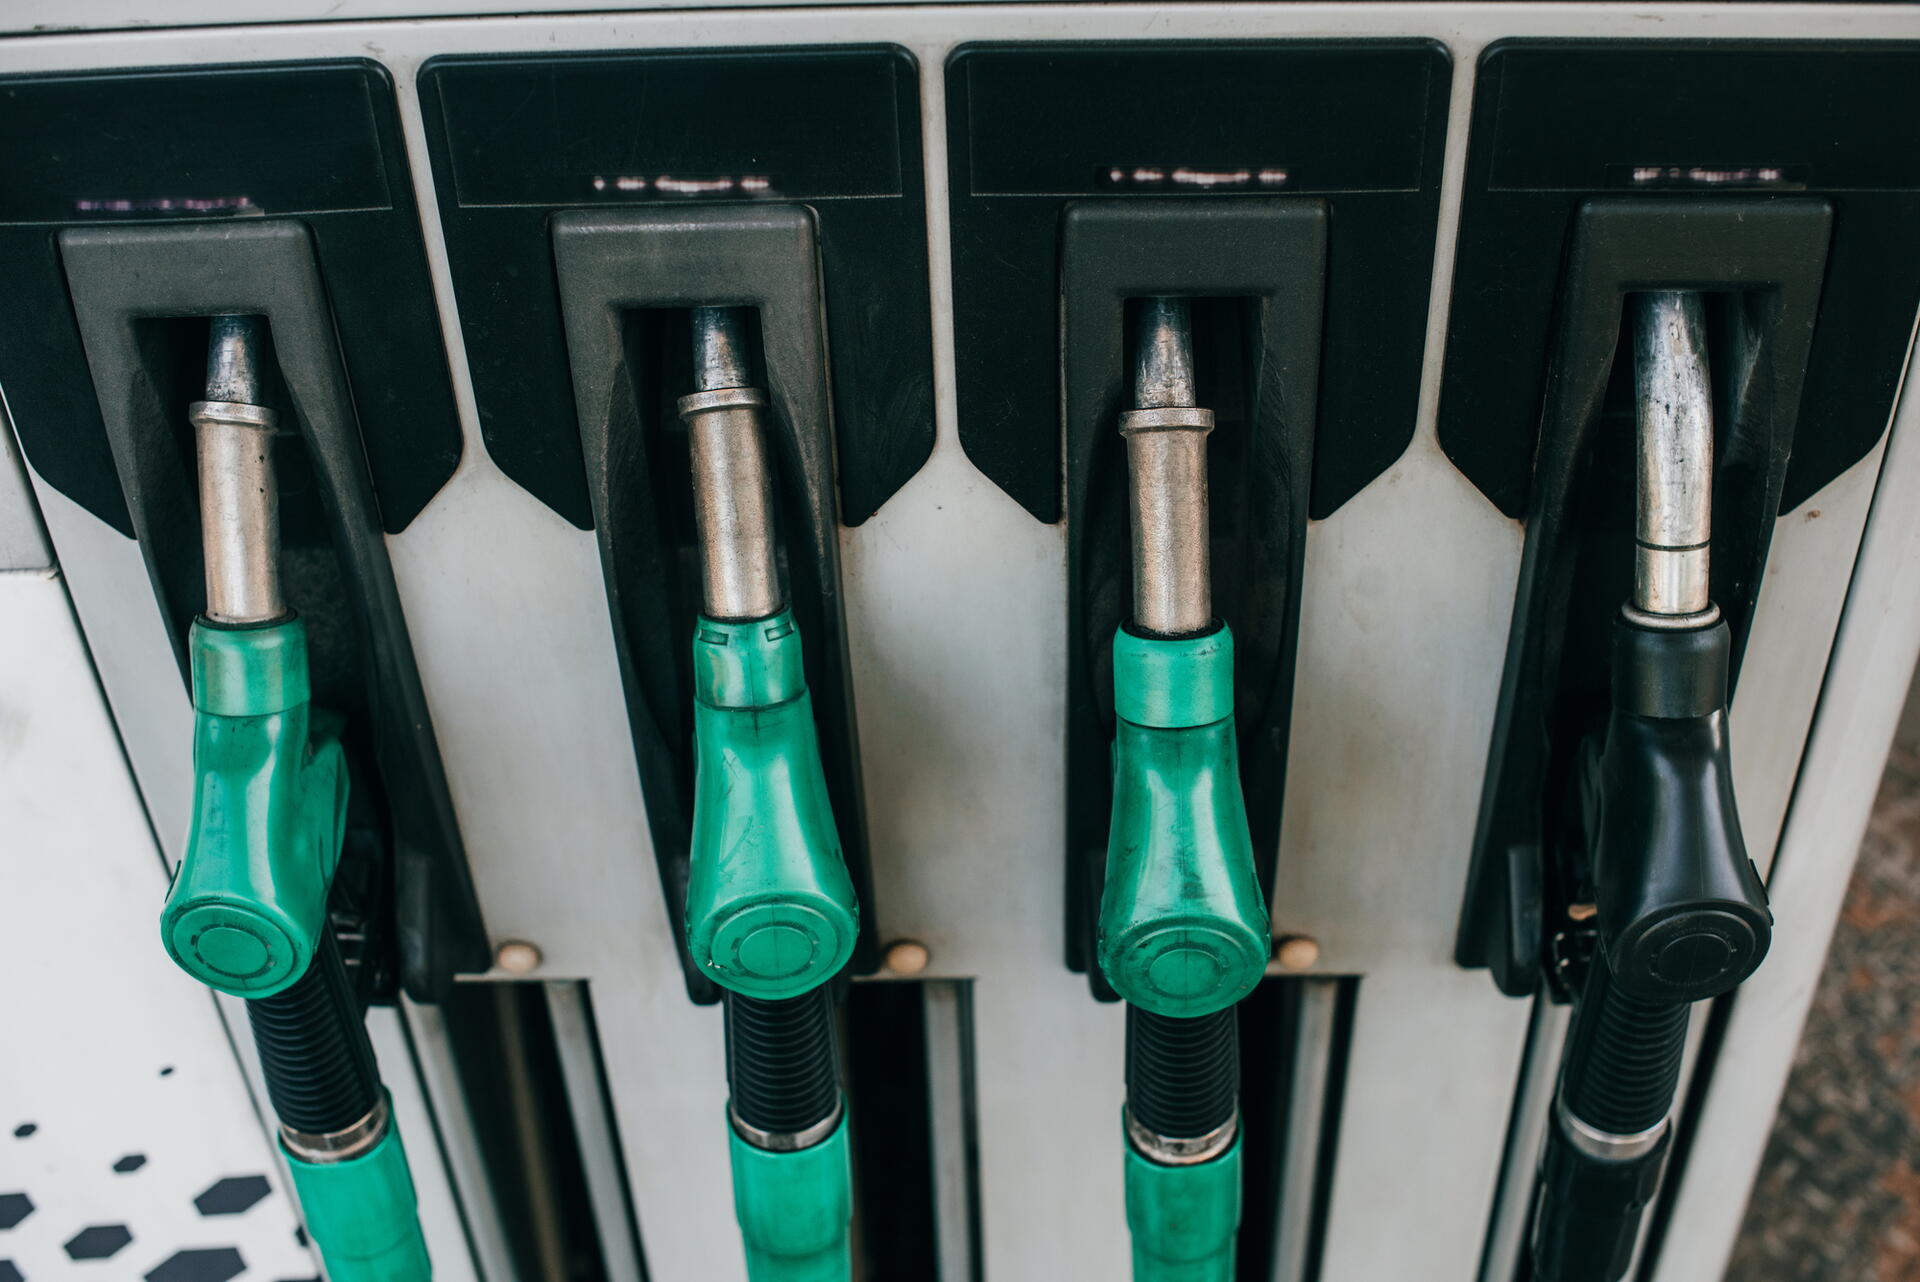 Kde koupit benzín a naftu bez biosložky?